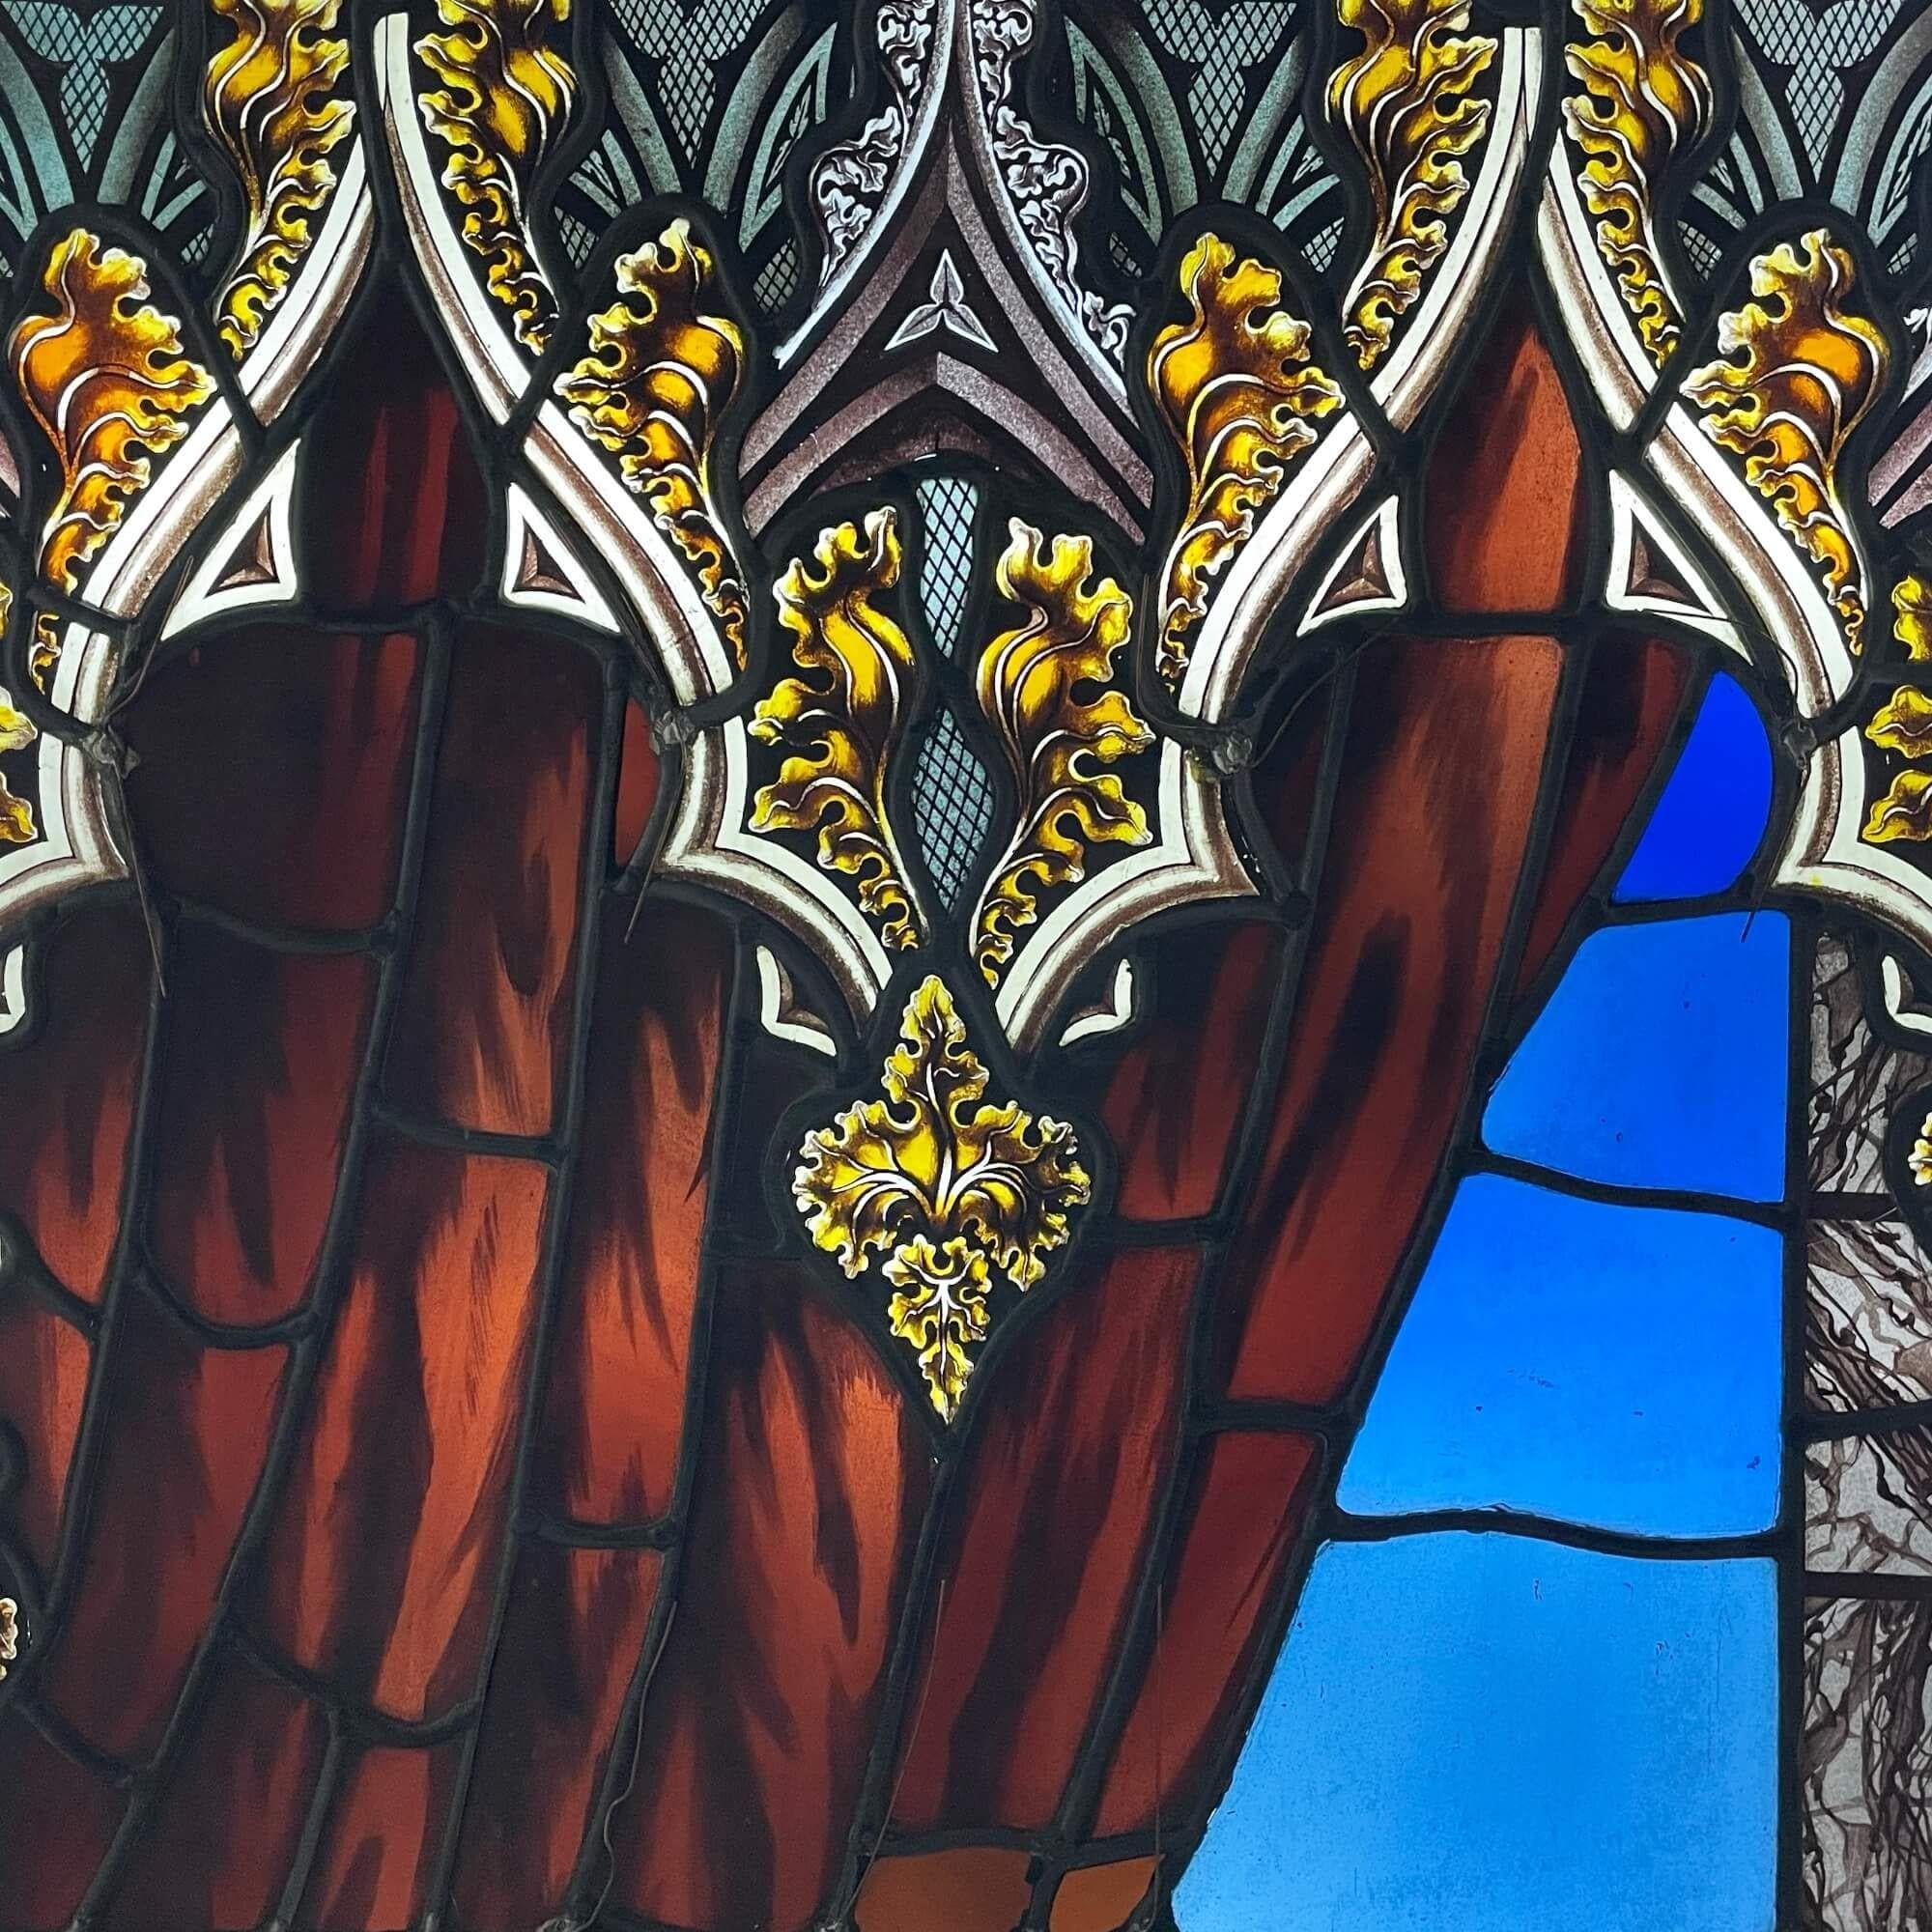 Panneau de vitrail anglais ancien et décoratif retiré de l'église Holy Trinity, High Street, Wordsley, Stourbridge (construite en 1831) et réputé avoir été conservé depuis. Ce panneau, dont on pense qu'il faisait autrefois partie d'une fenêtre plus